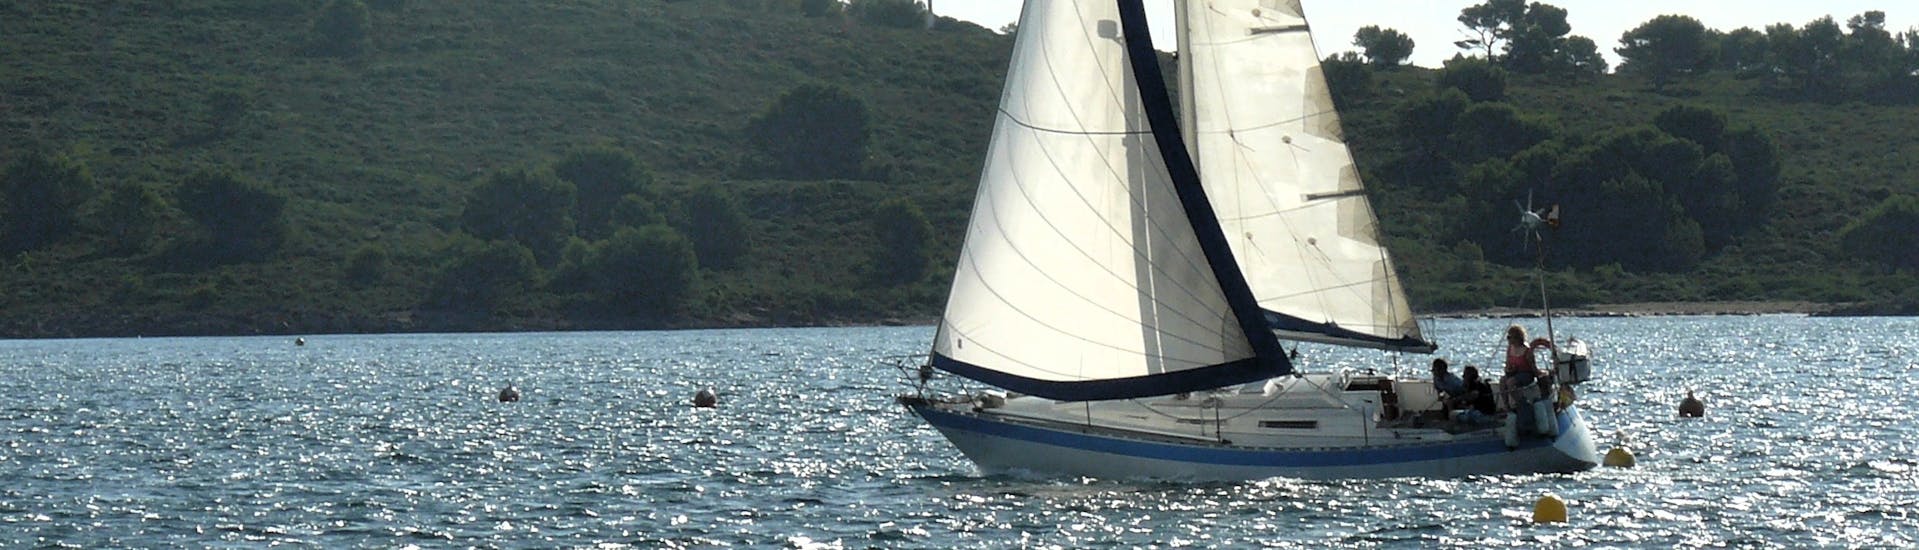 Uno de los barcos utilizados durante la excursión por Katayak Menorca para su paseo en barco velero desde Fornells por el norte de Menorca con barra libre.